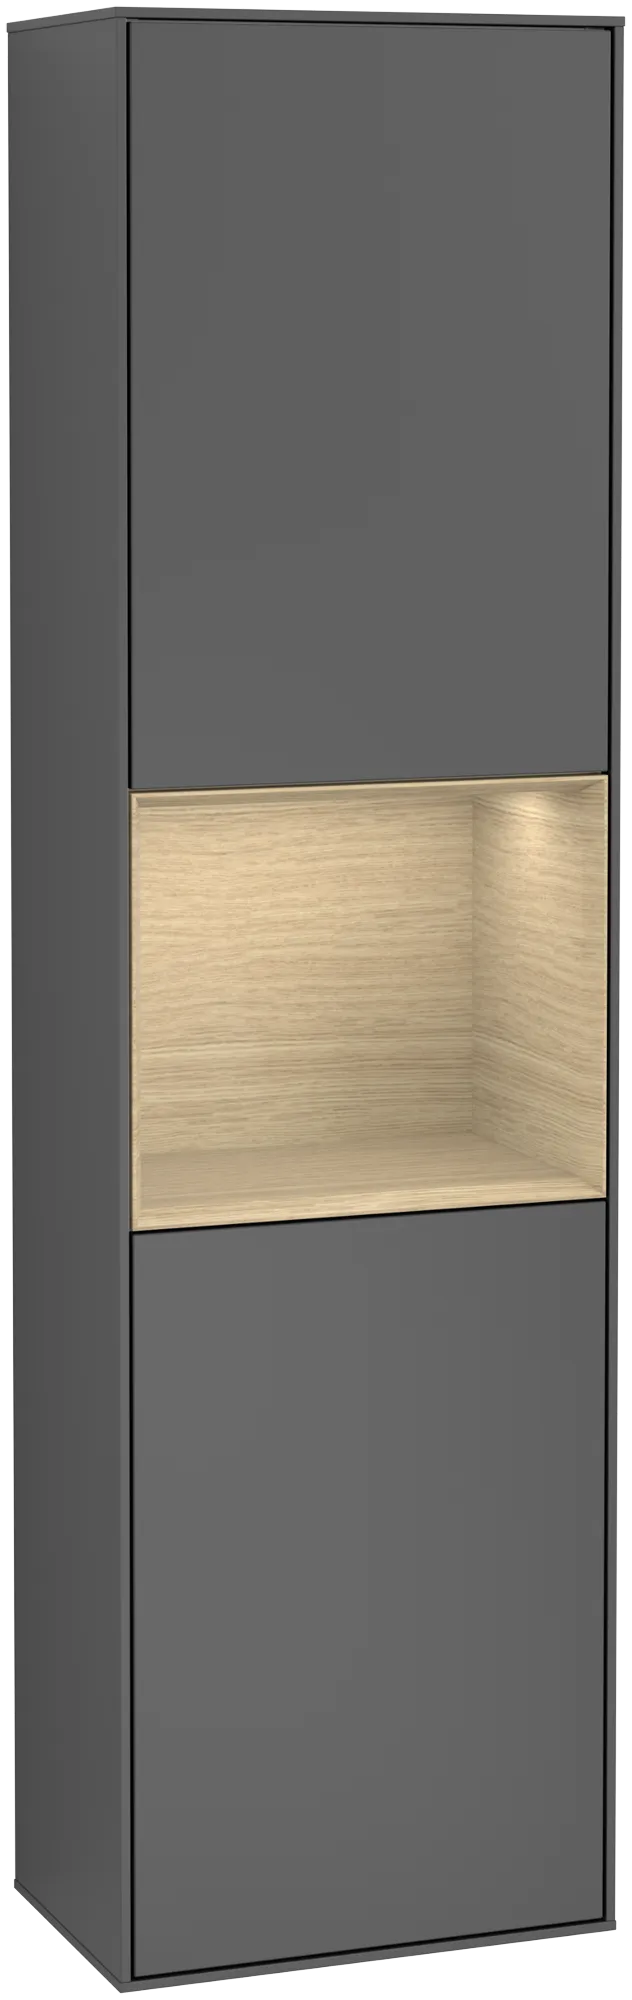 Bild von VILLEROY BOCH Finion Hochschrank, mit Beleuchtung, 2 Türen, 418 x 1516 x 270 mm, Anthracite Matt Lacquer / Oak Veneer #G460PCGK